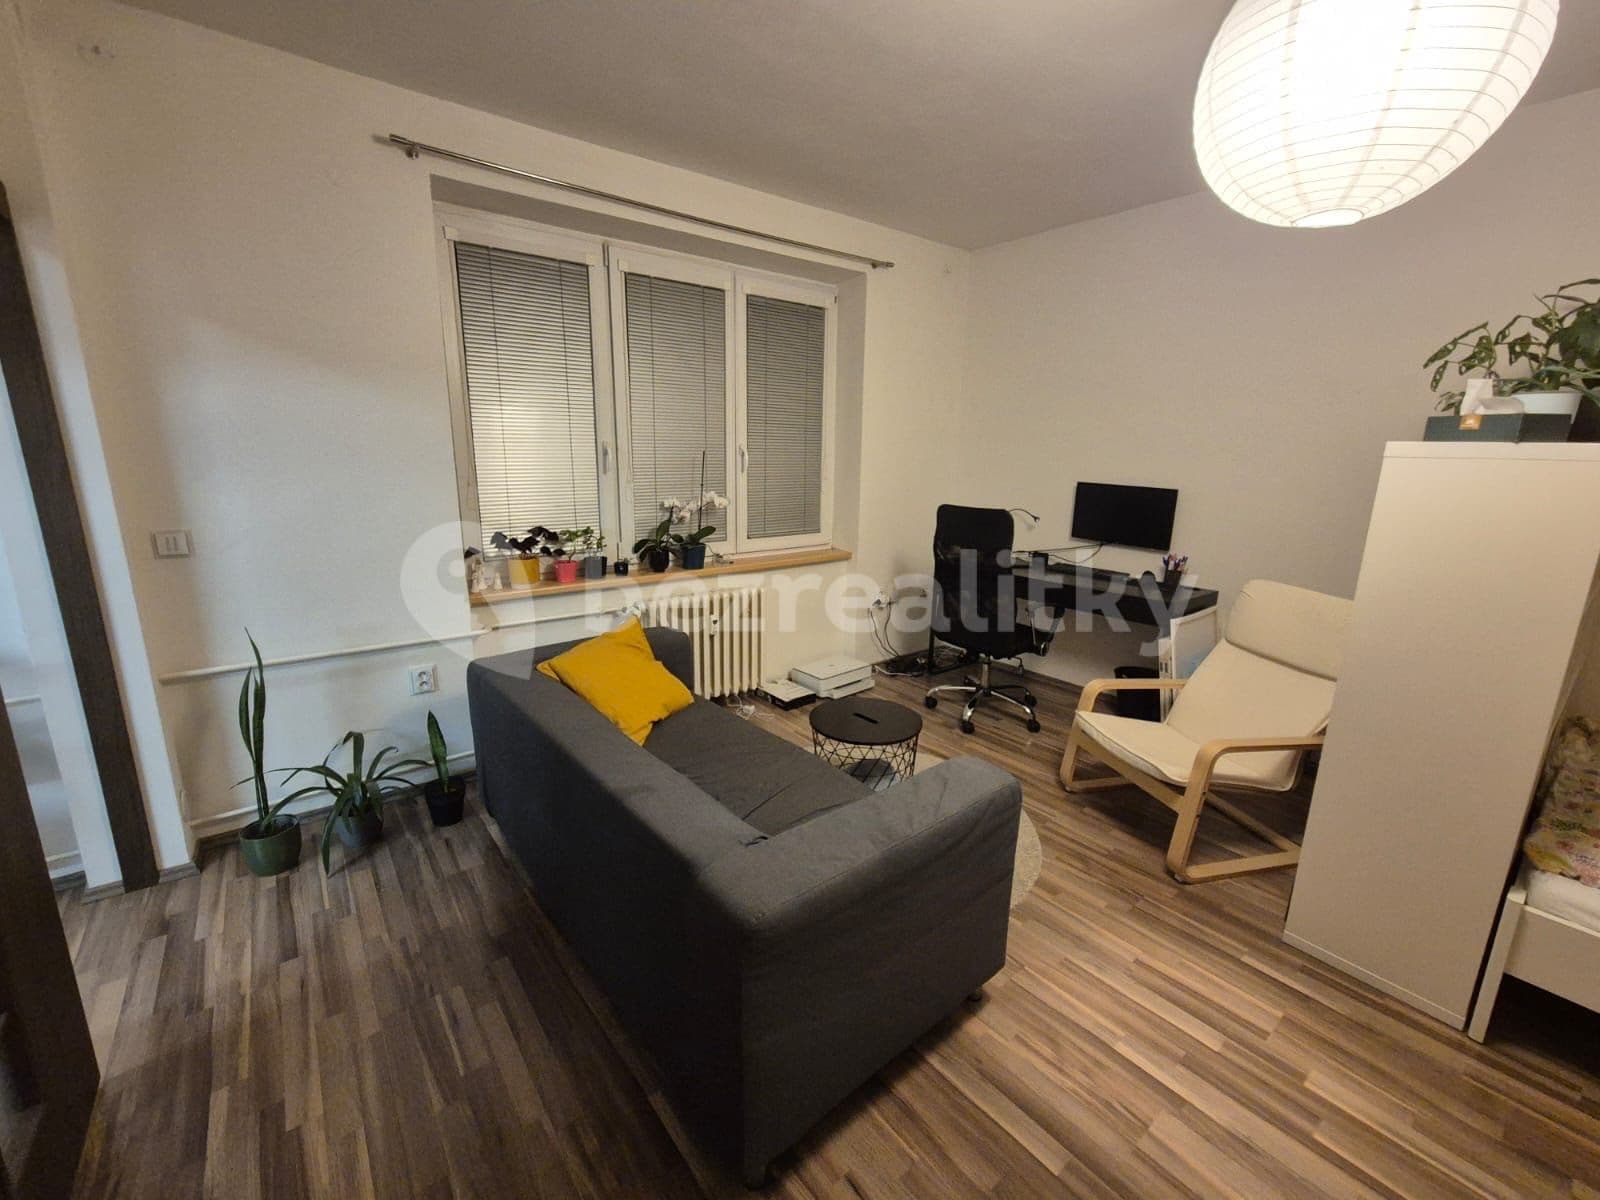 1 bedroom flat to rent, 38 m², Polní, Brno, Jihomoravský Region